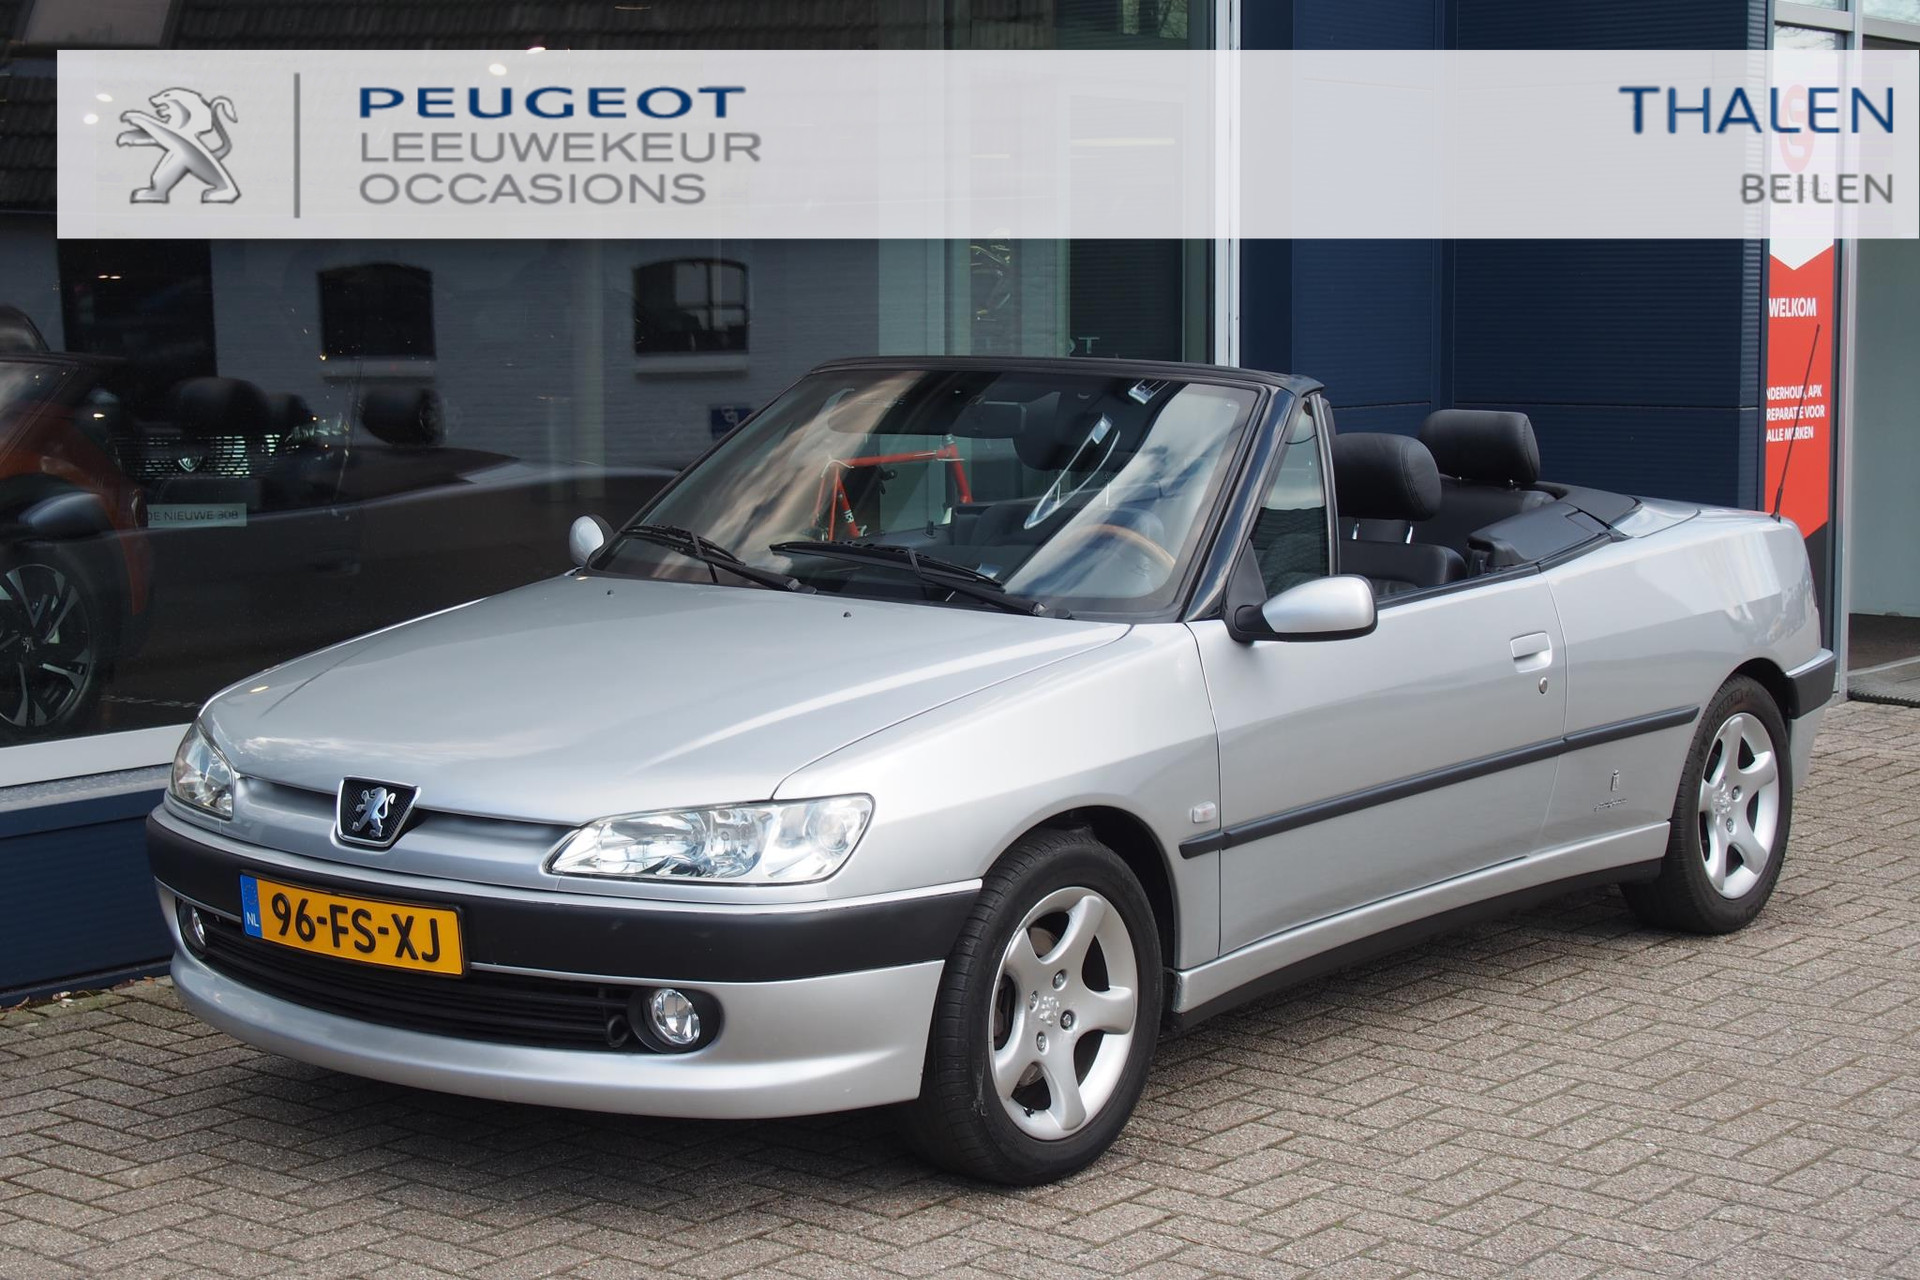 Peugeot 306 1.6 CABRIOLET AUT UIT PRIVECOLLECTIE! KEURIGE 306 CABRIO AUTOMAAT VAN 1E EIGENAAR MET SLECHTS 71.000 KM!